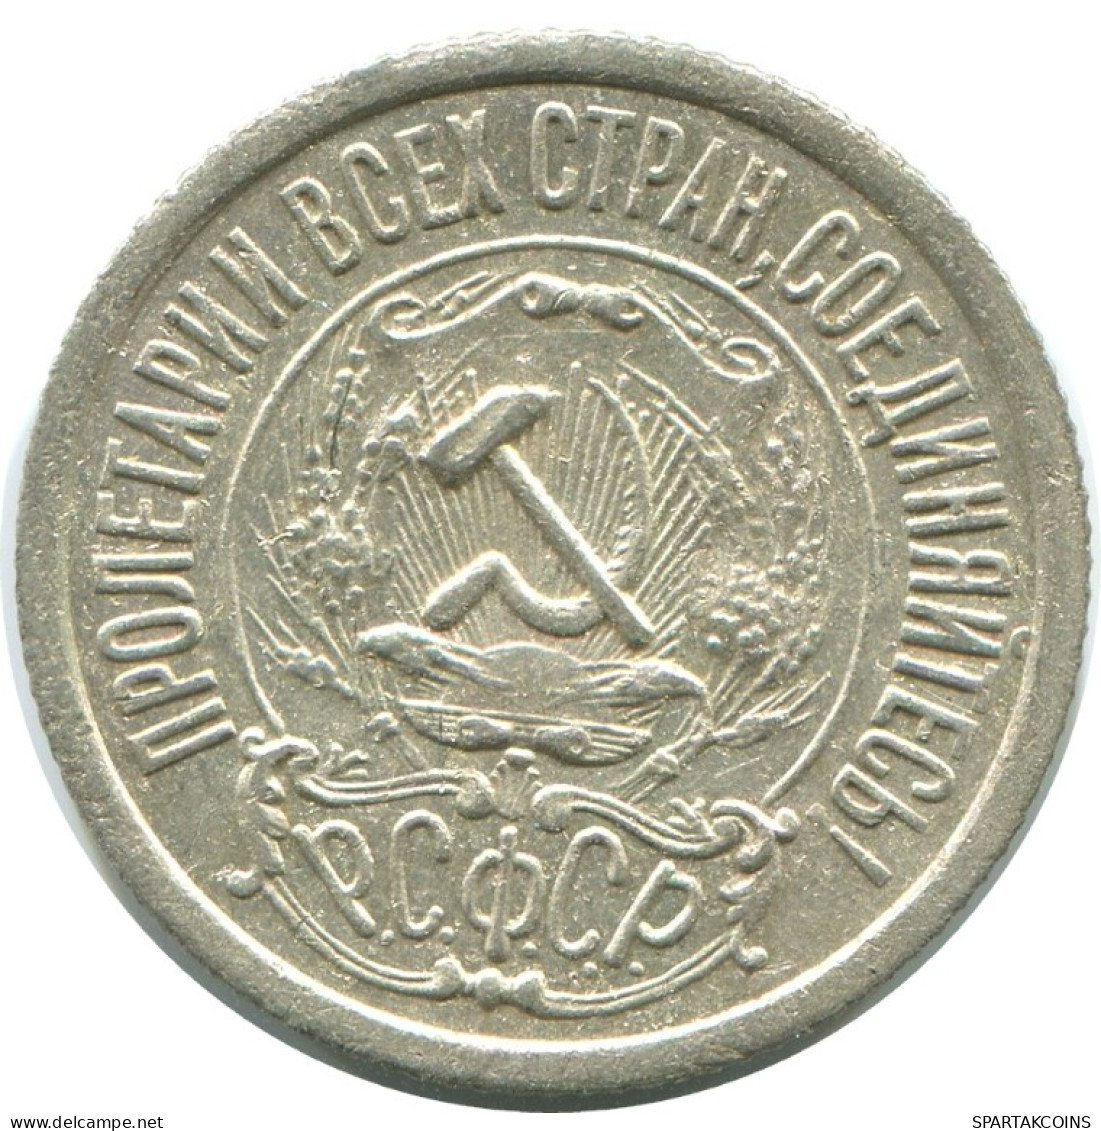 15 KOPEKS 1922 RUSSLAND RUSSIA RSFSR SILBER Münze HIGH GRADE #AF191.4.D.A - Russia